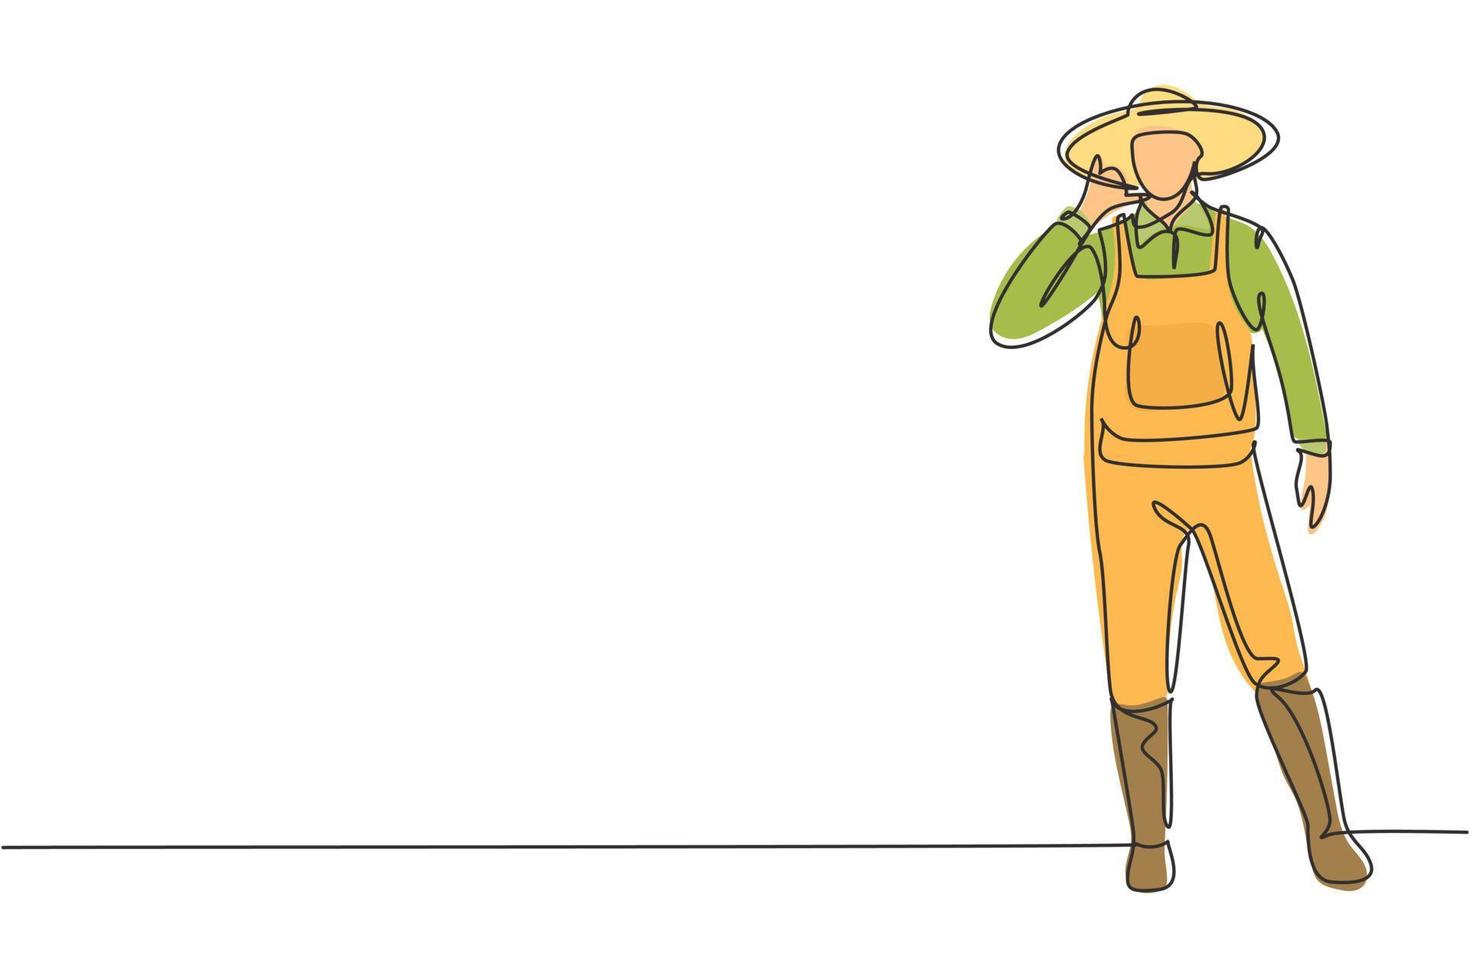 Ein einzelner kontinuierlicher Strichzeichnungsbauer stand mit der Geste "Ruf mich" und trug Strohhut und Uniform, um Getreide auf Ackerland zu pflanzen. Erfolgsgeschäft. dynamische eine linie zeichnen grafikdesign vektorillustration vektor